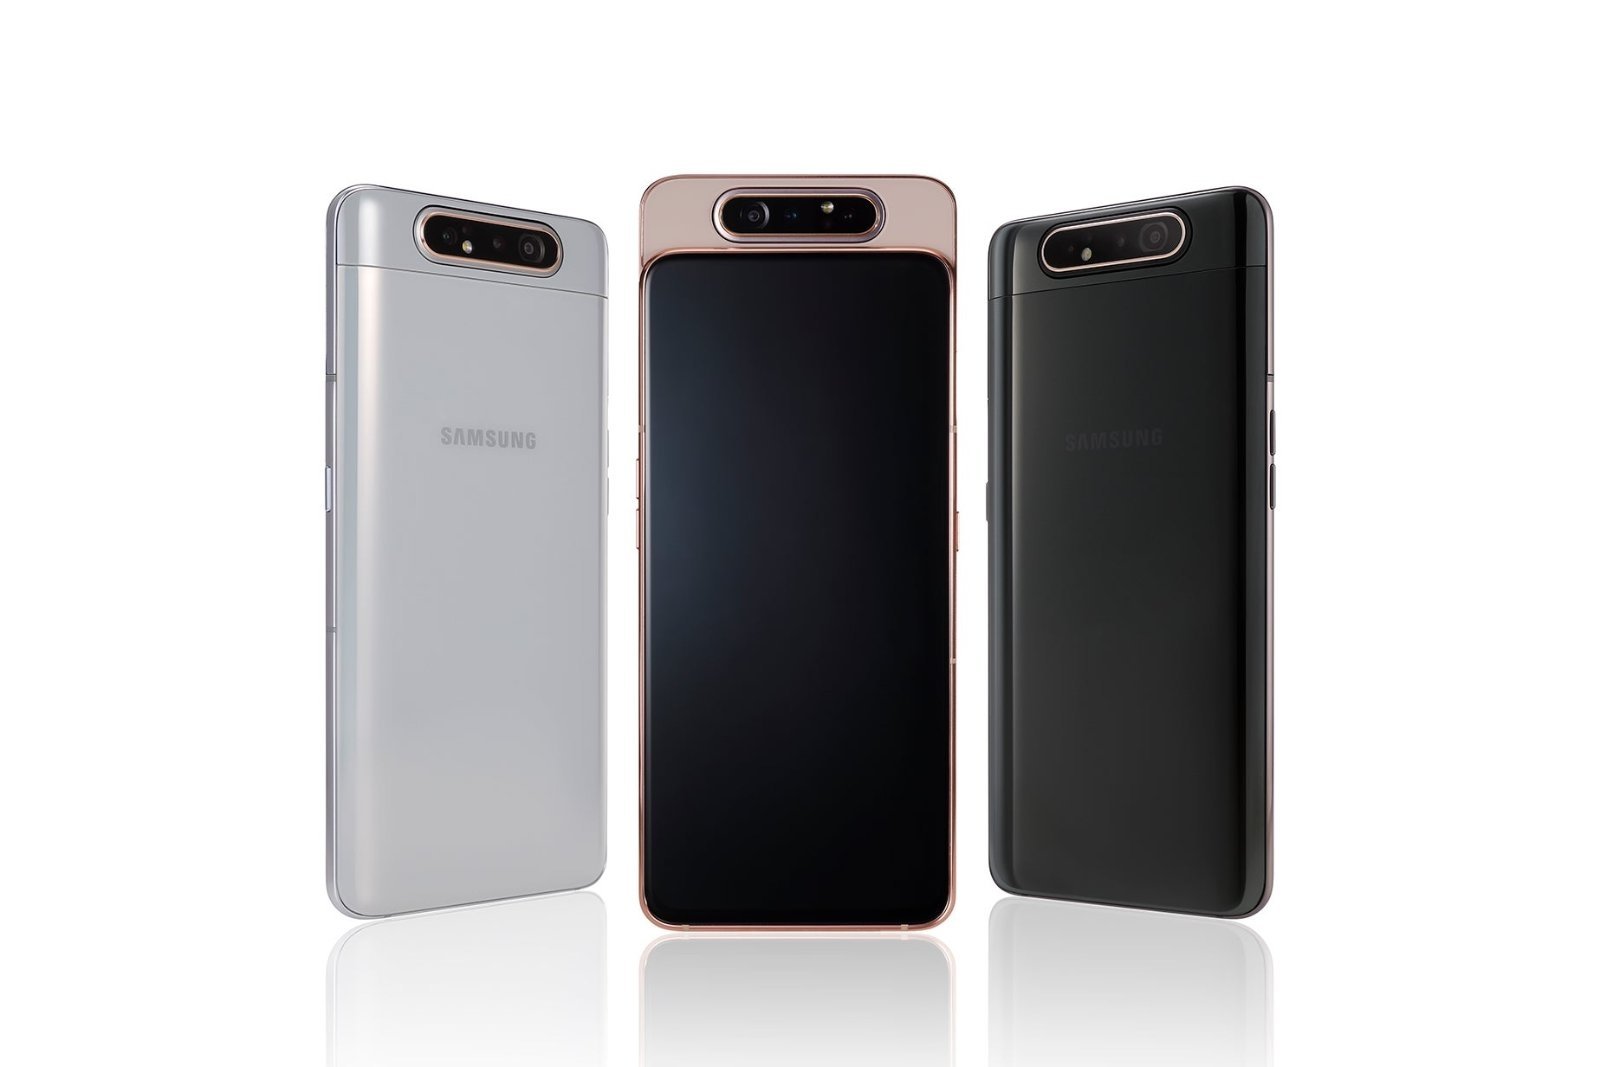 Samsung Galaxy variantes en gama de negros